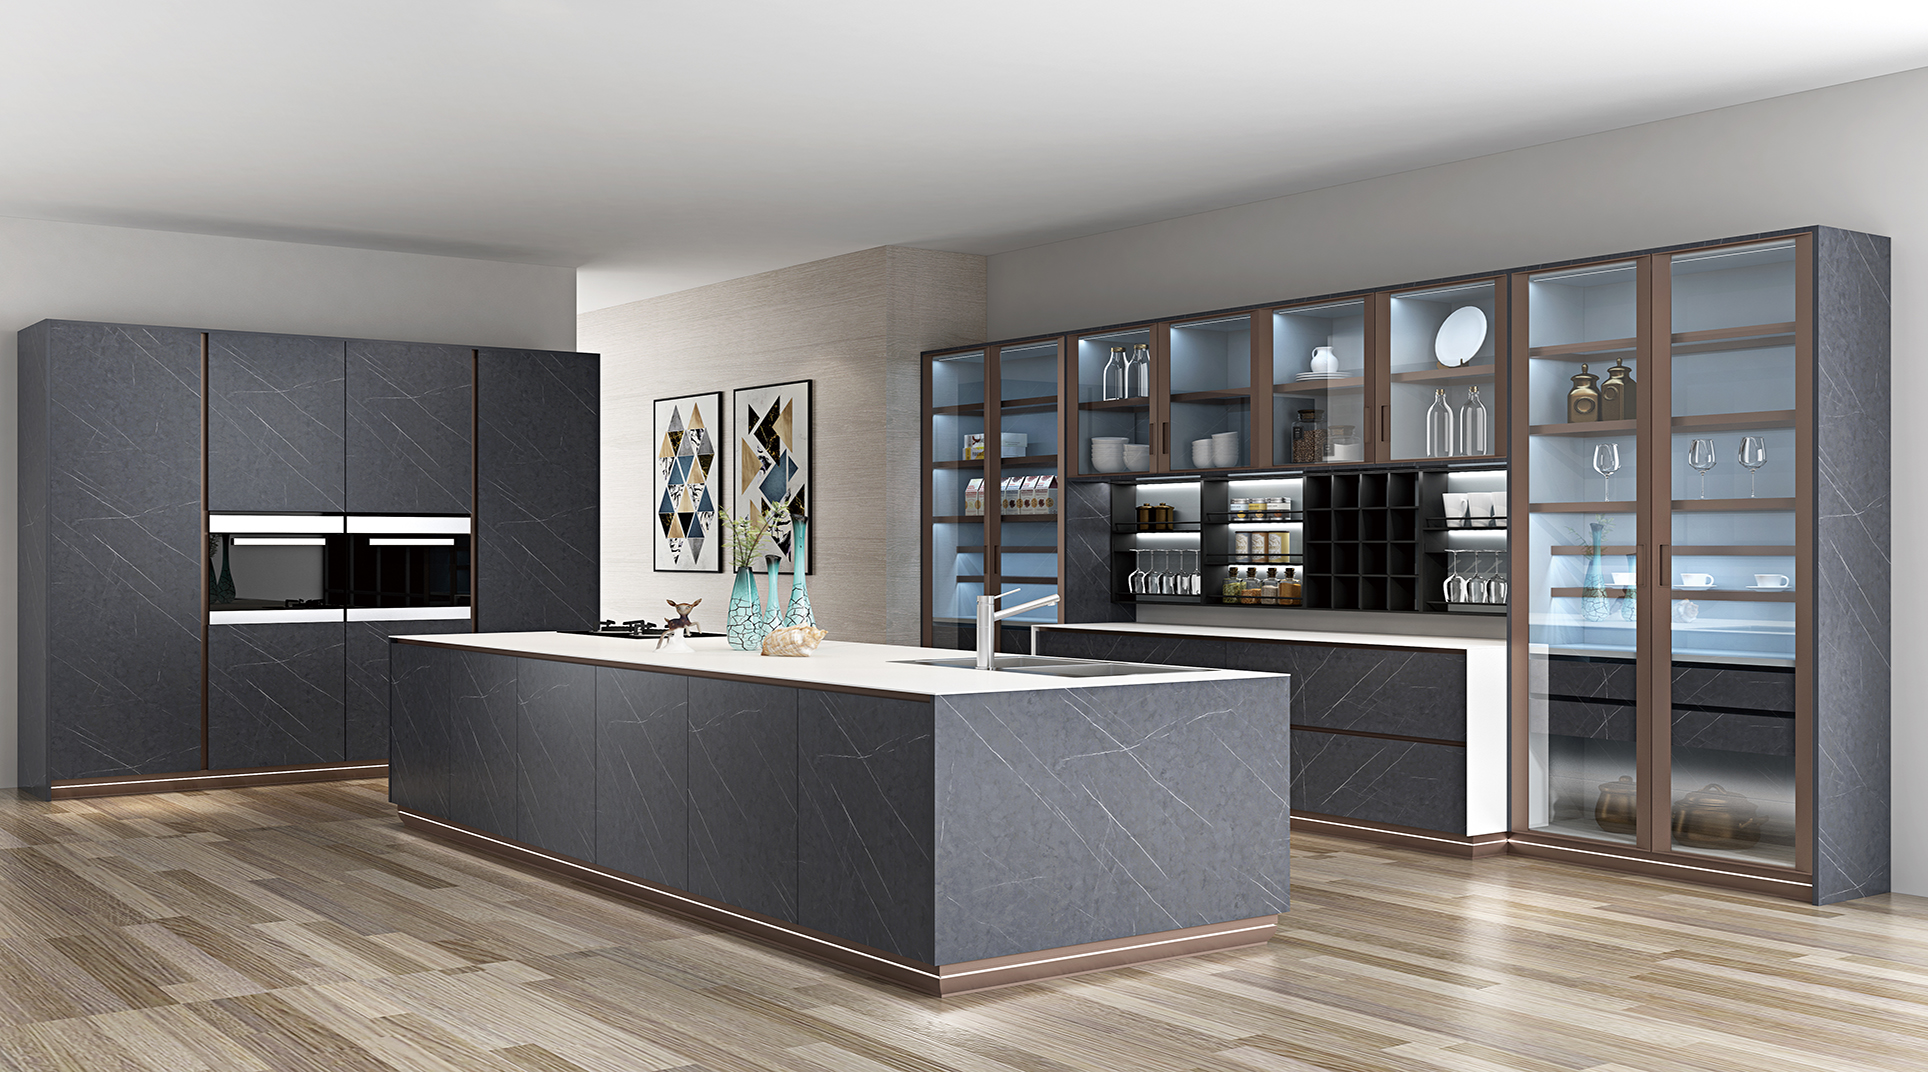 Modern Design kitchen cabinet